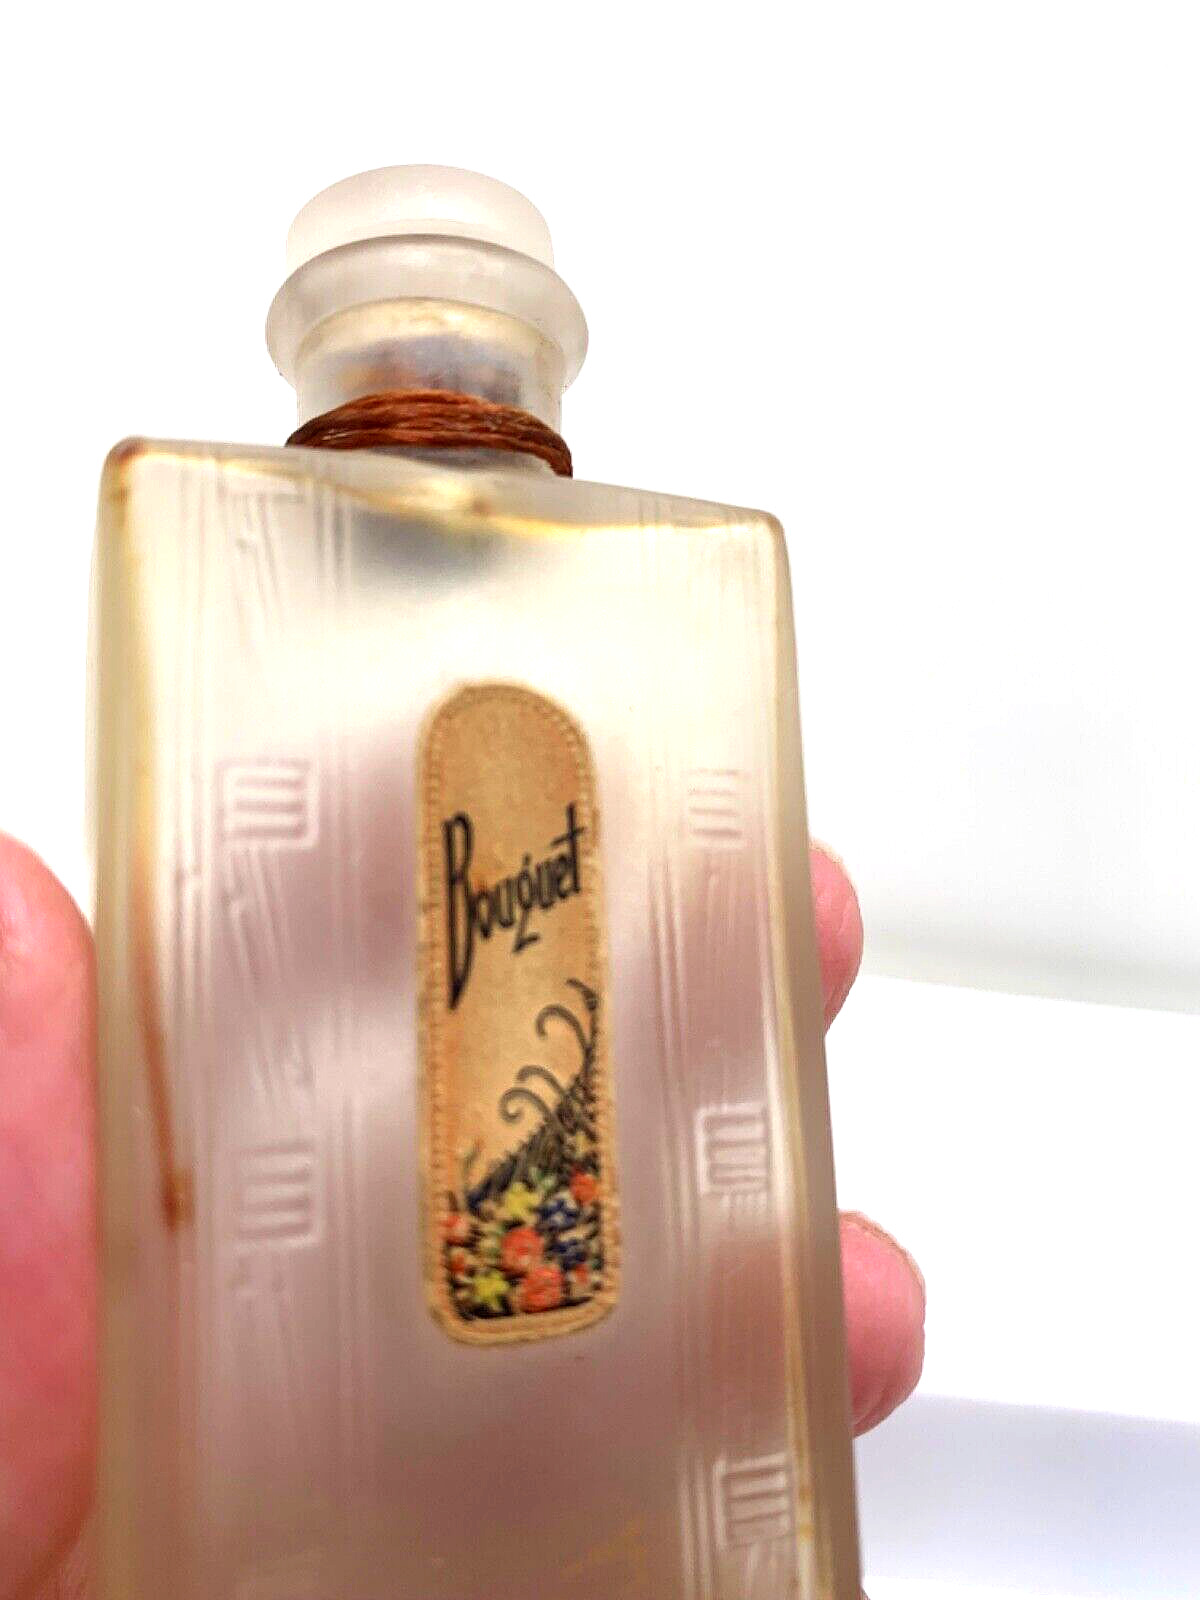 Pretty  Art Deco   Vintage perfume bottle.  ‘Bouquet’.   Est. Mid 20s-mid 30s.